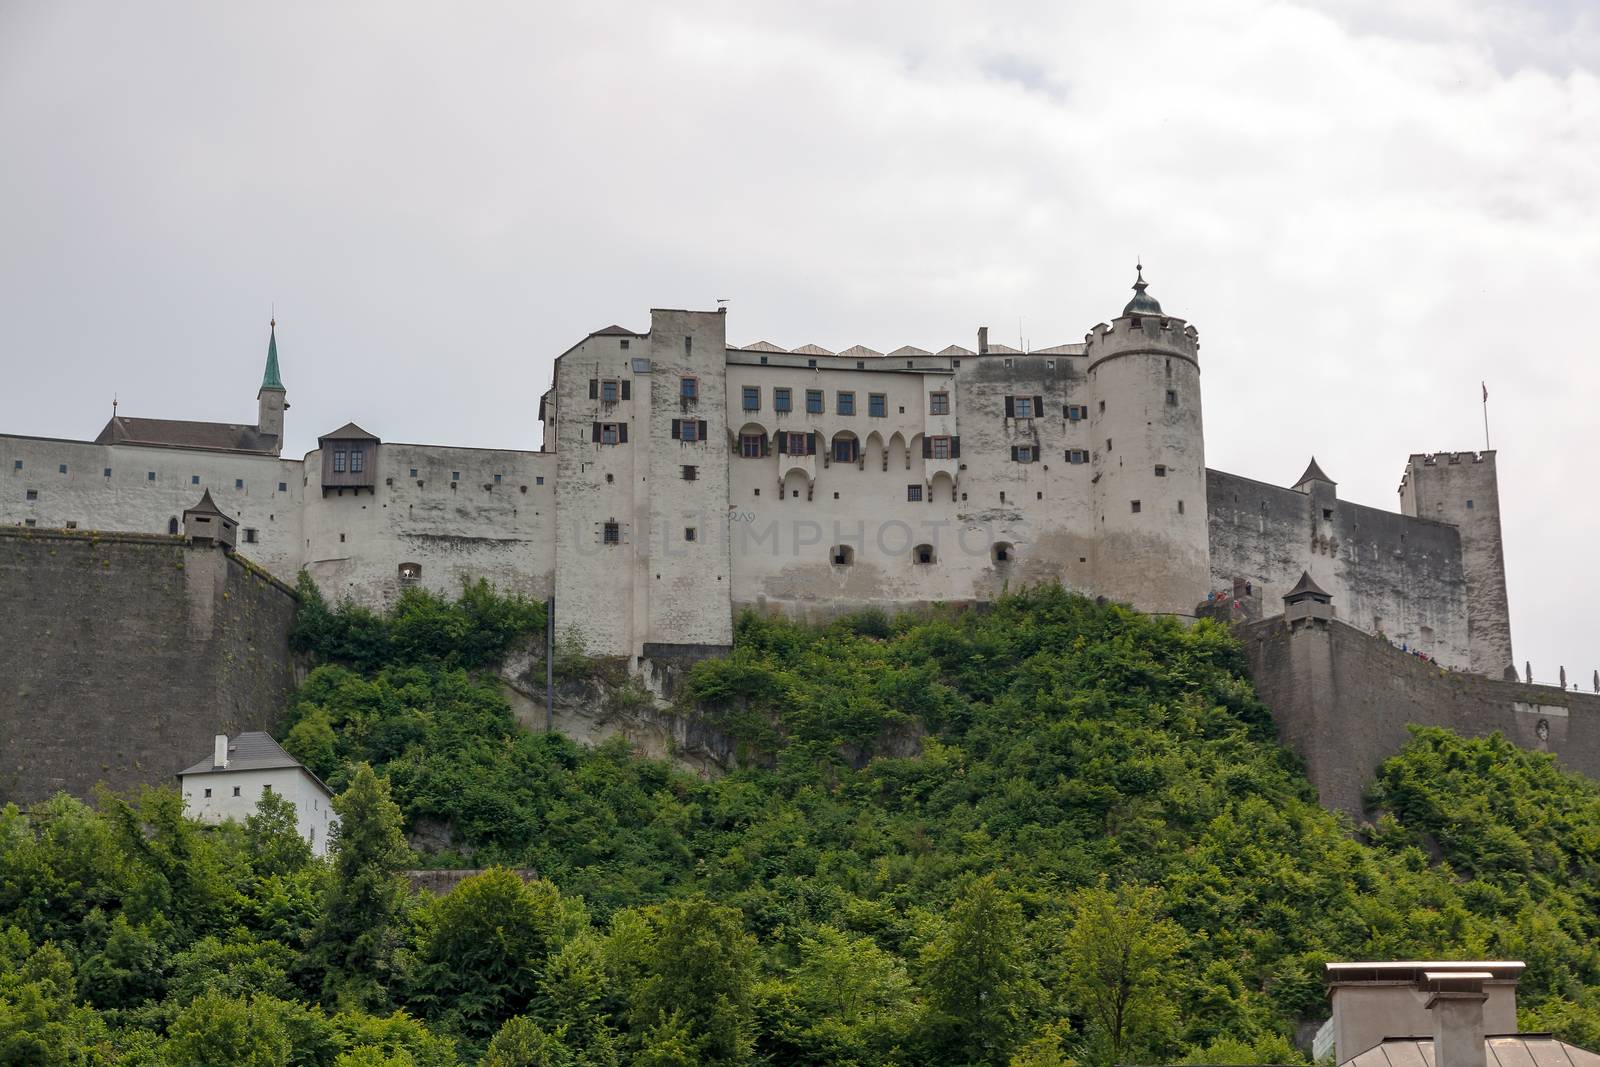 Castle Hohensalzburg, Salzburg, Austria by aldorado